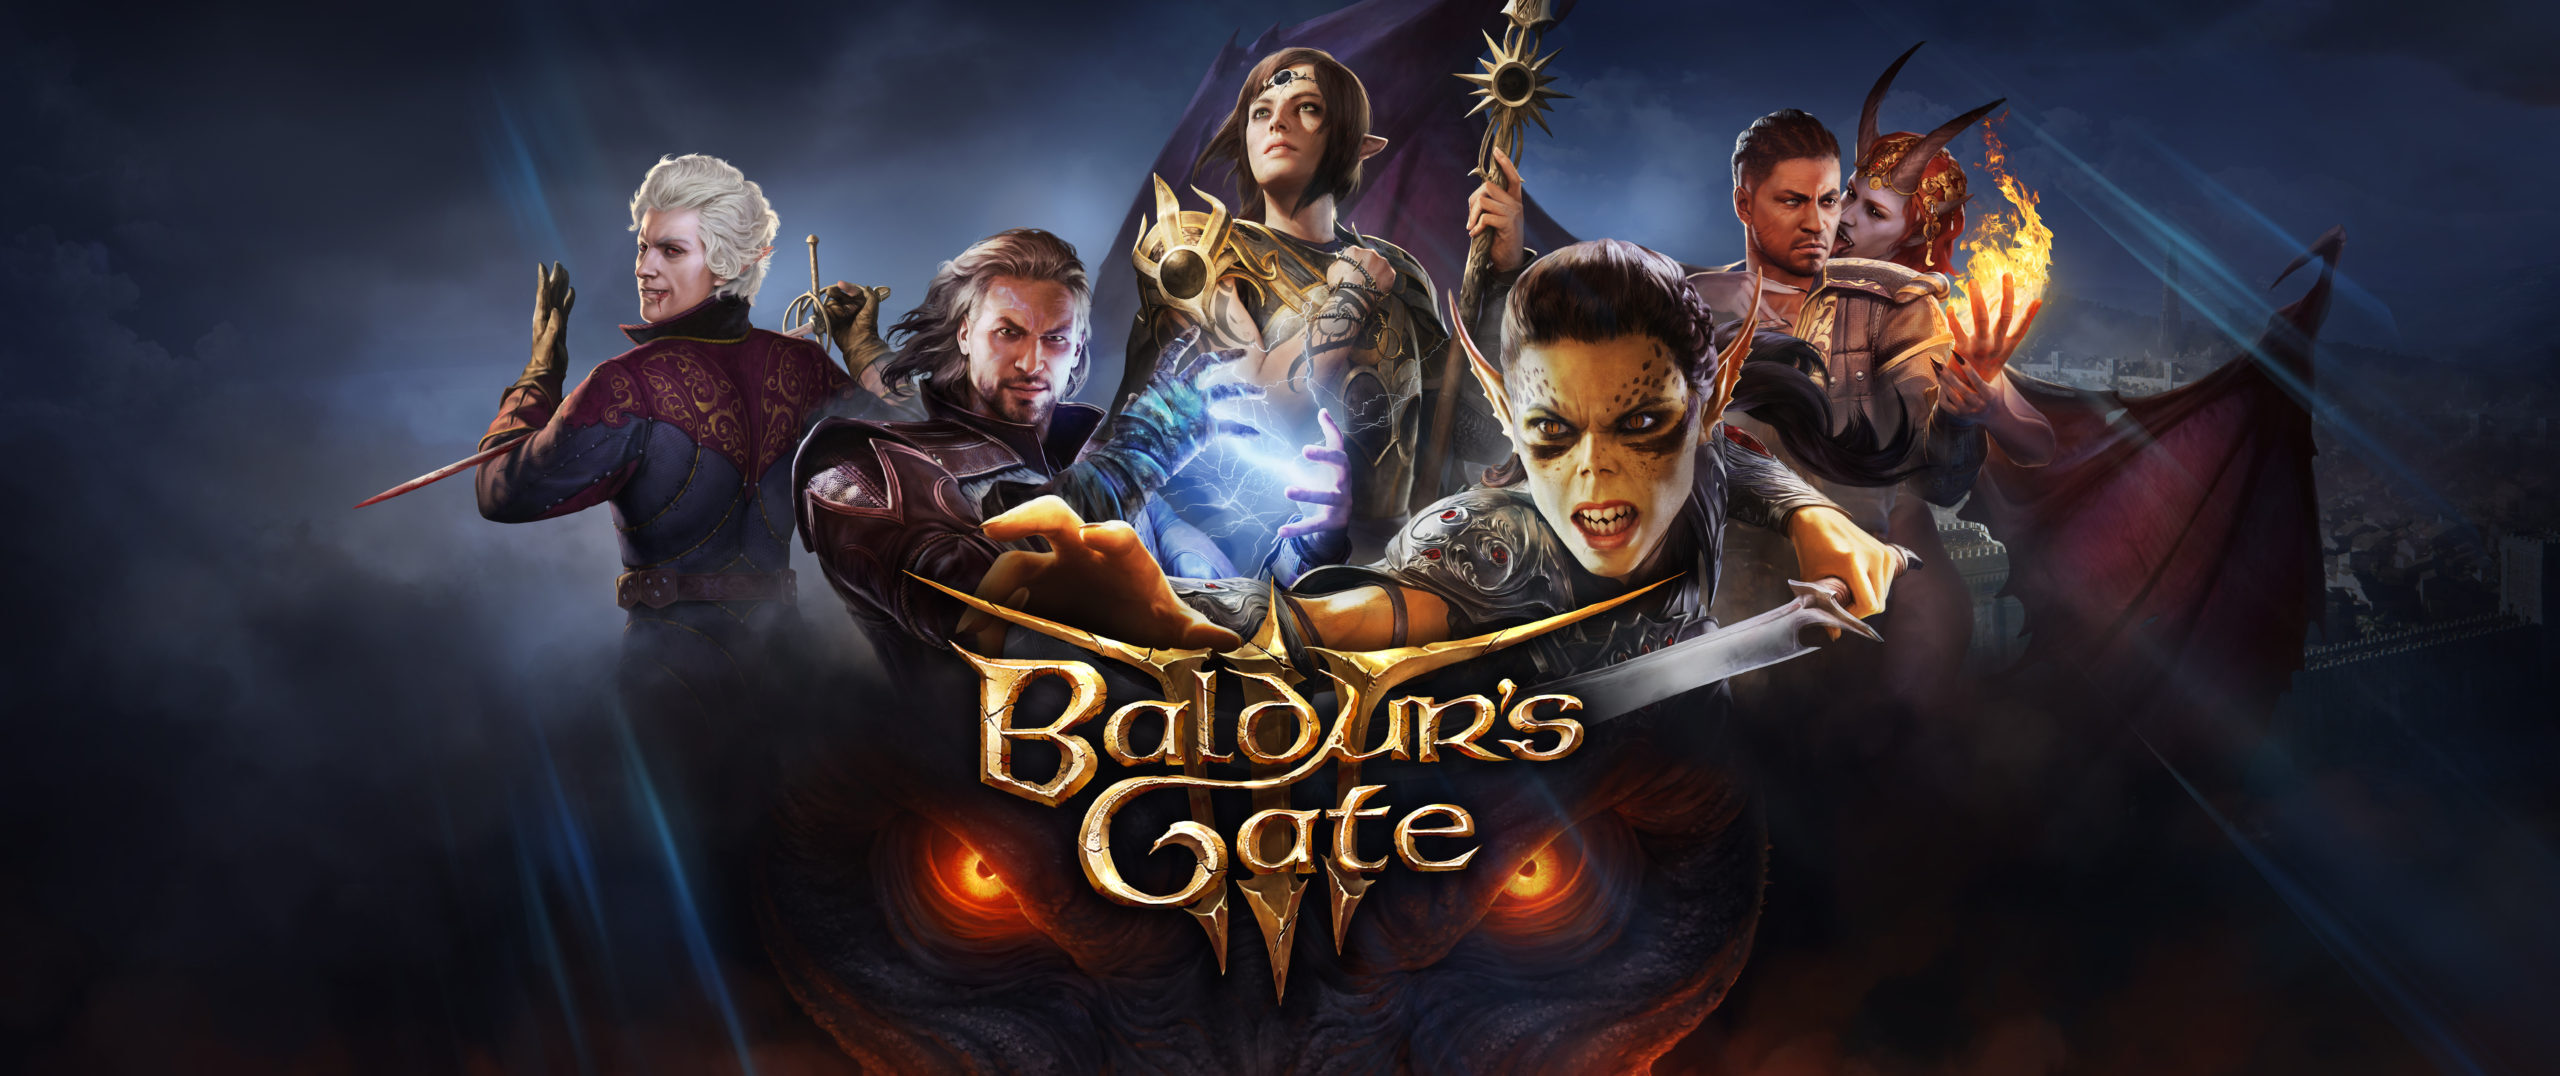 Baldur's Gate III Sold 5.2 Million Copies on Steam Alone